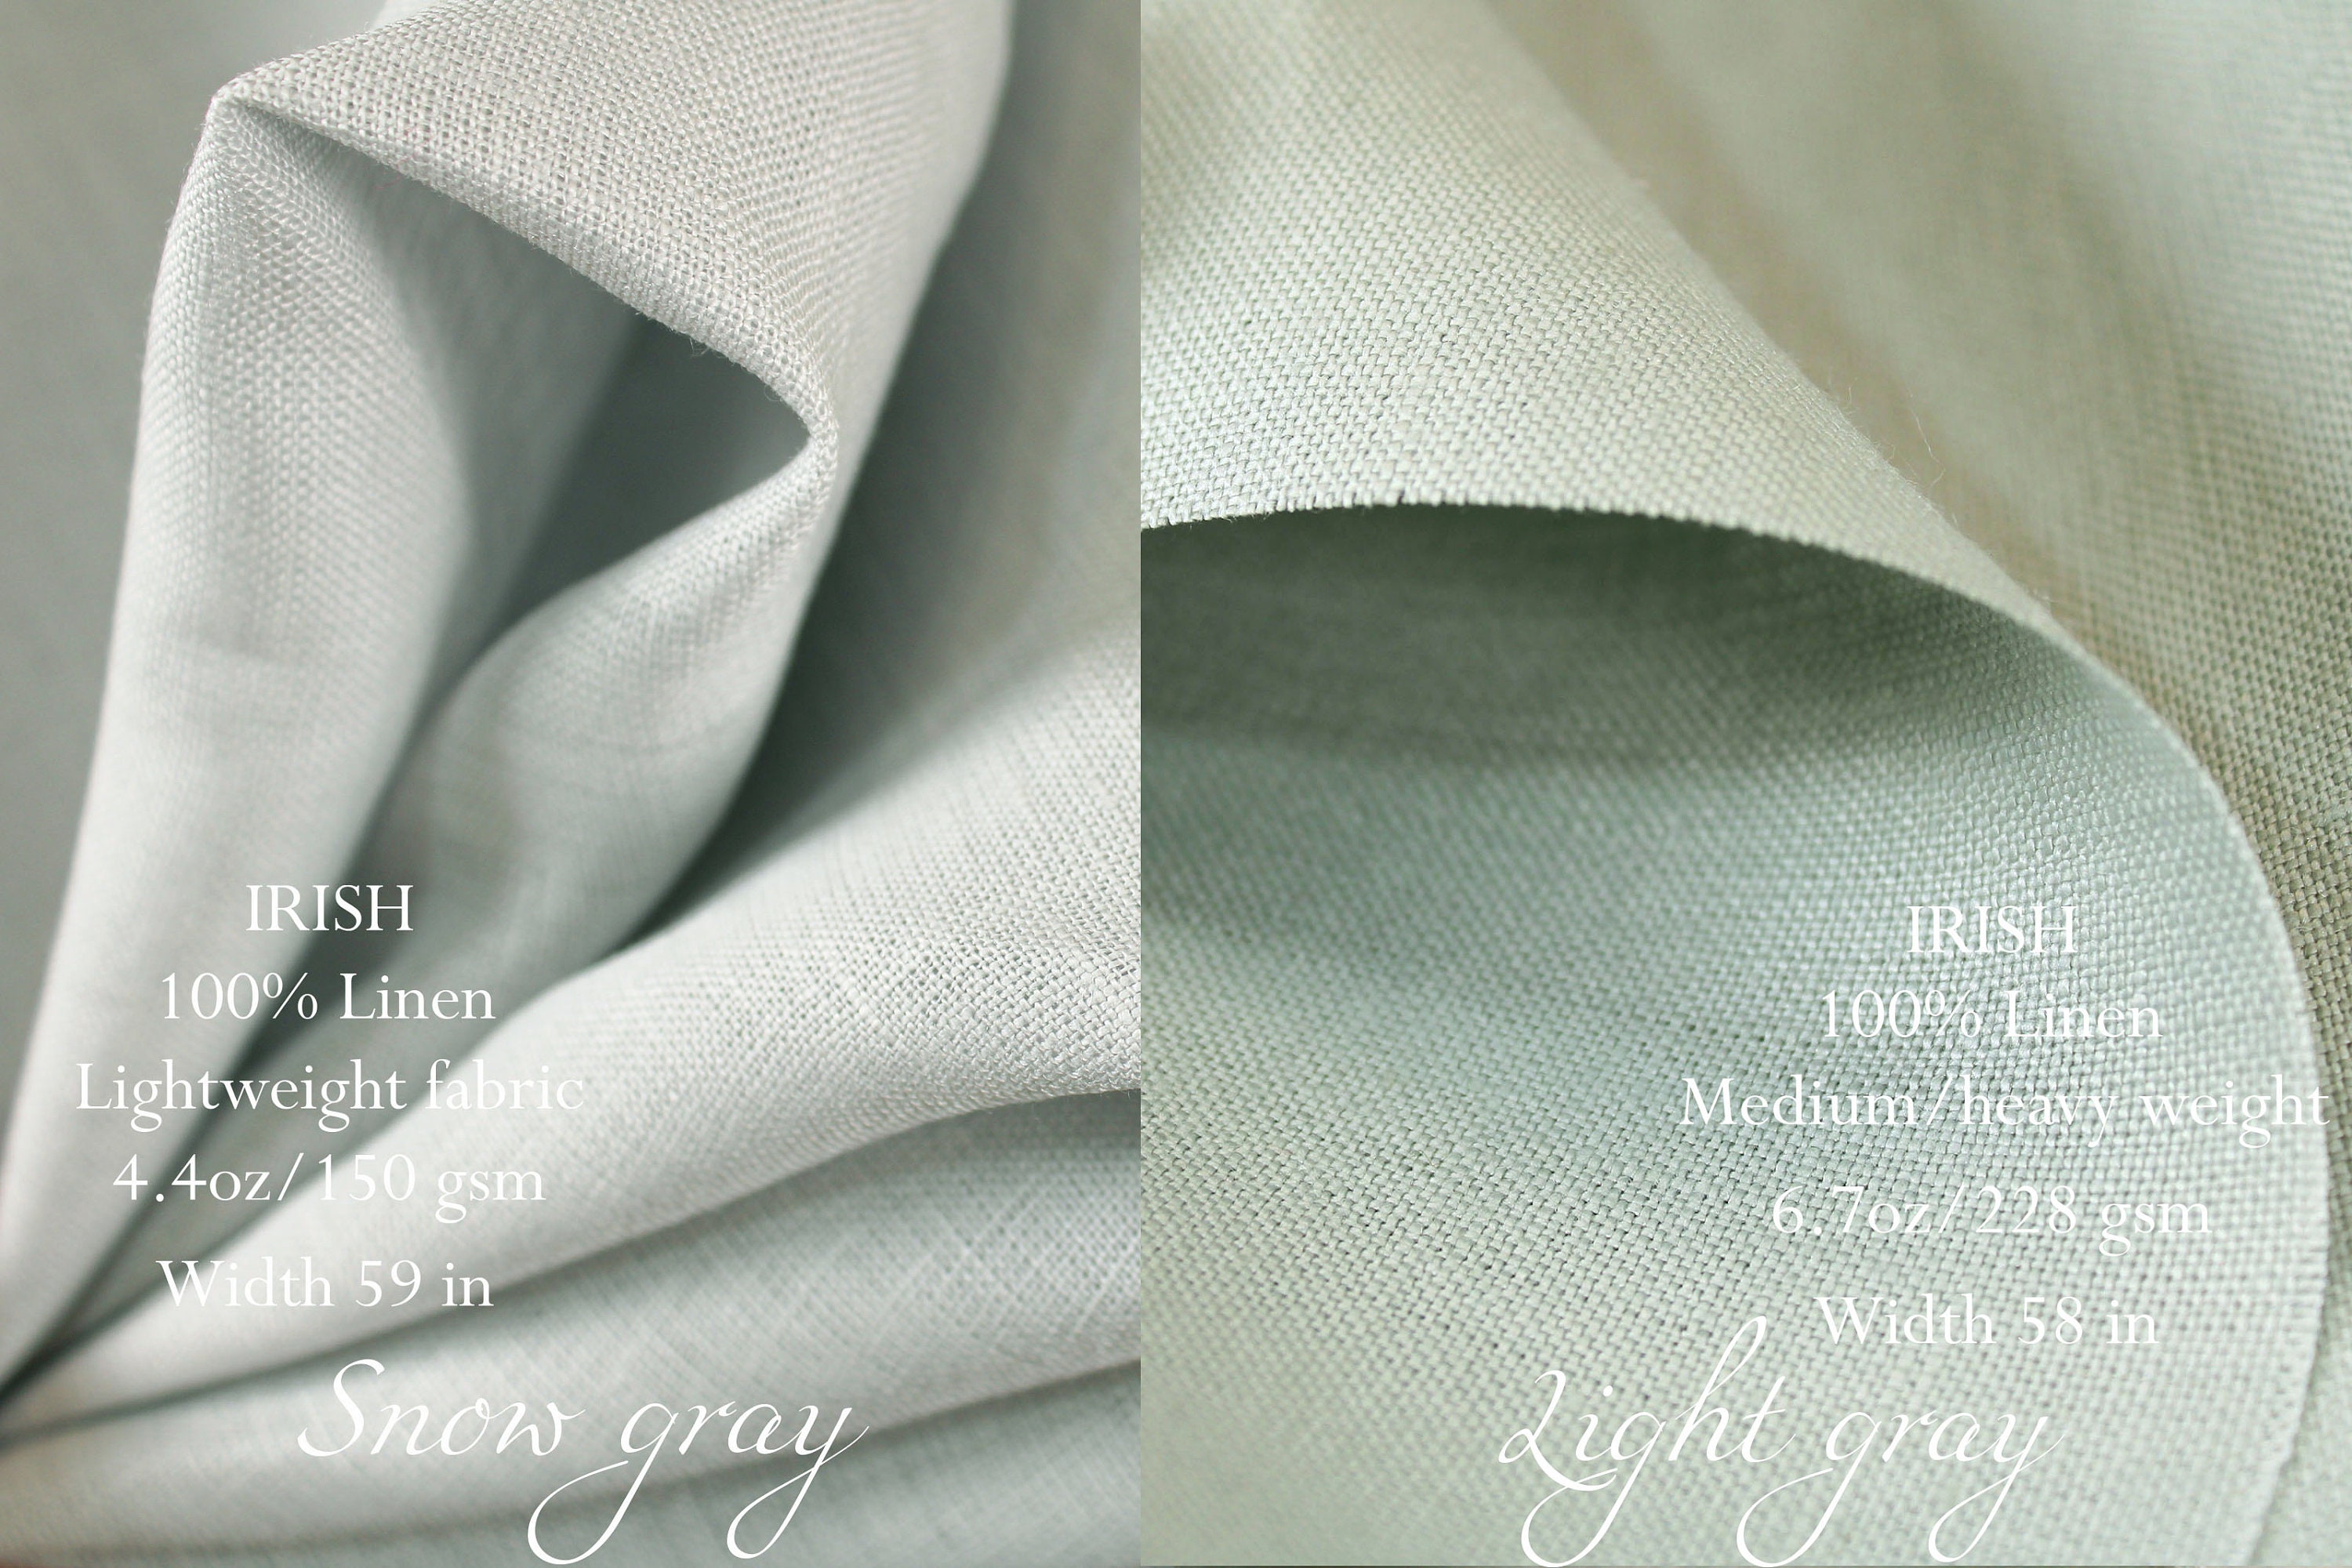 European Linen Blend Light Tan  Medium/Heavyweight Linen Fabric